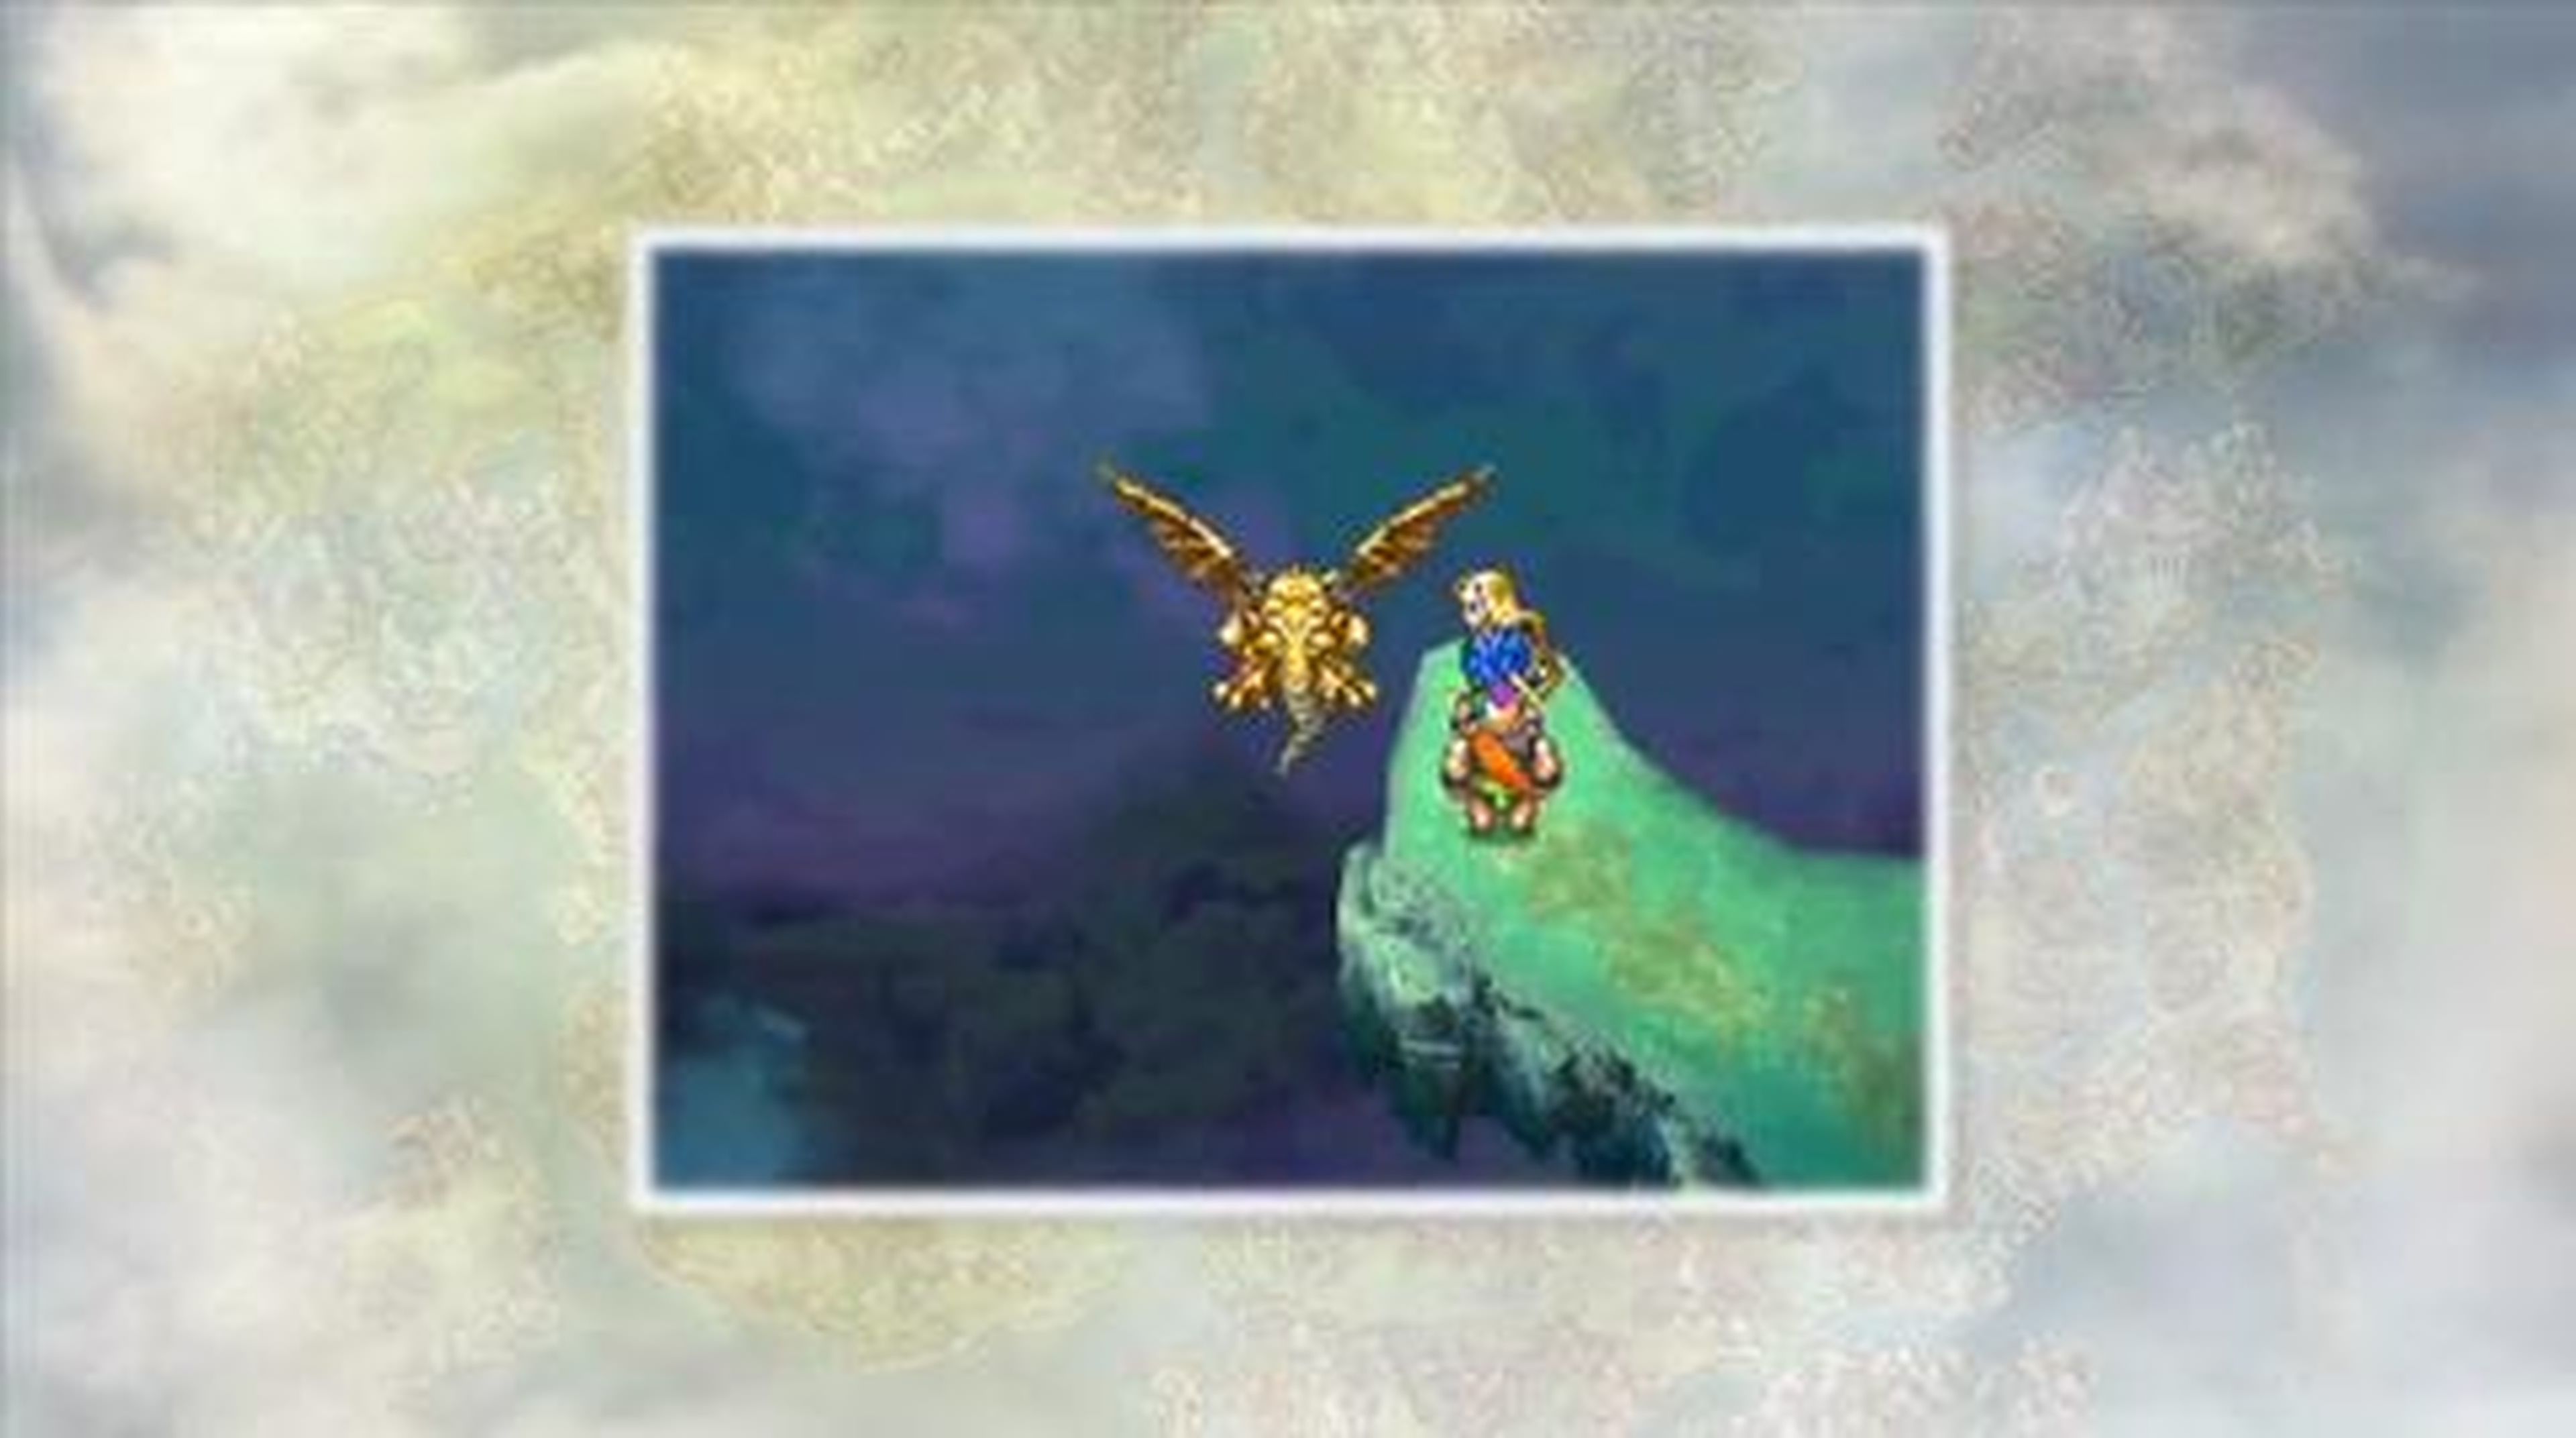 Tráiler de lanzamiento de Dragon Quest VI en HobbyNews.es